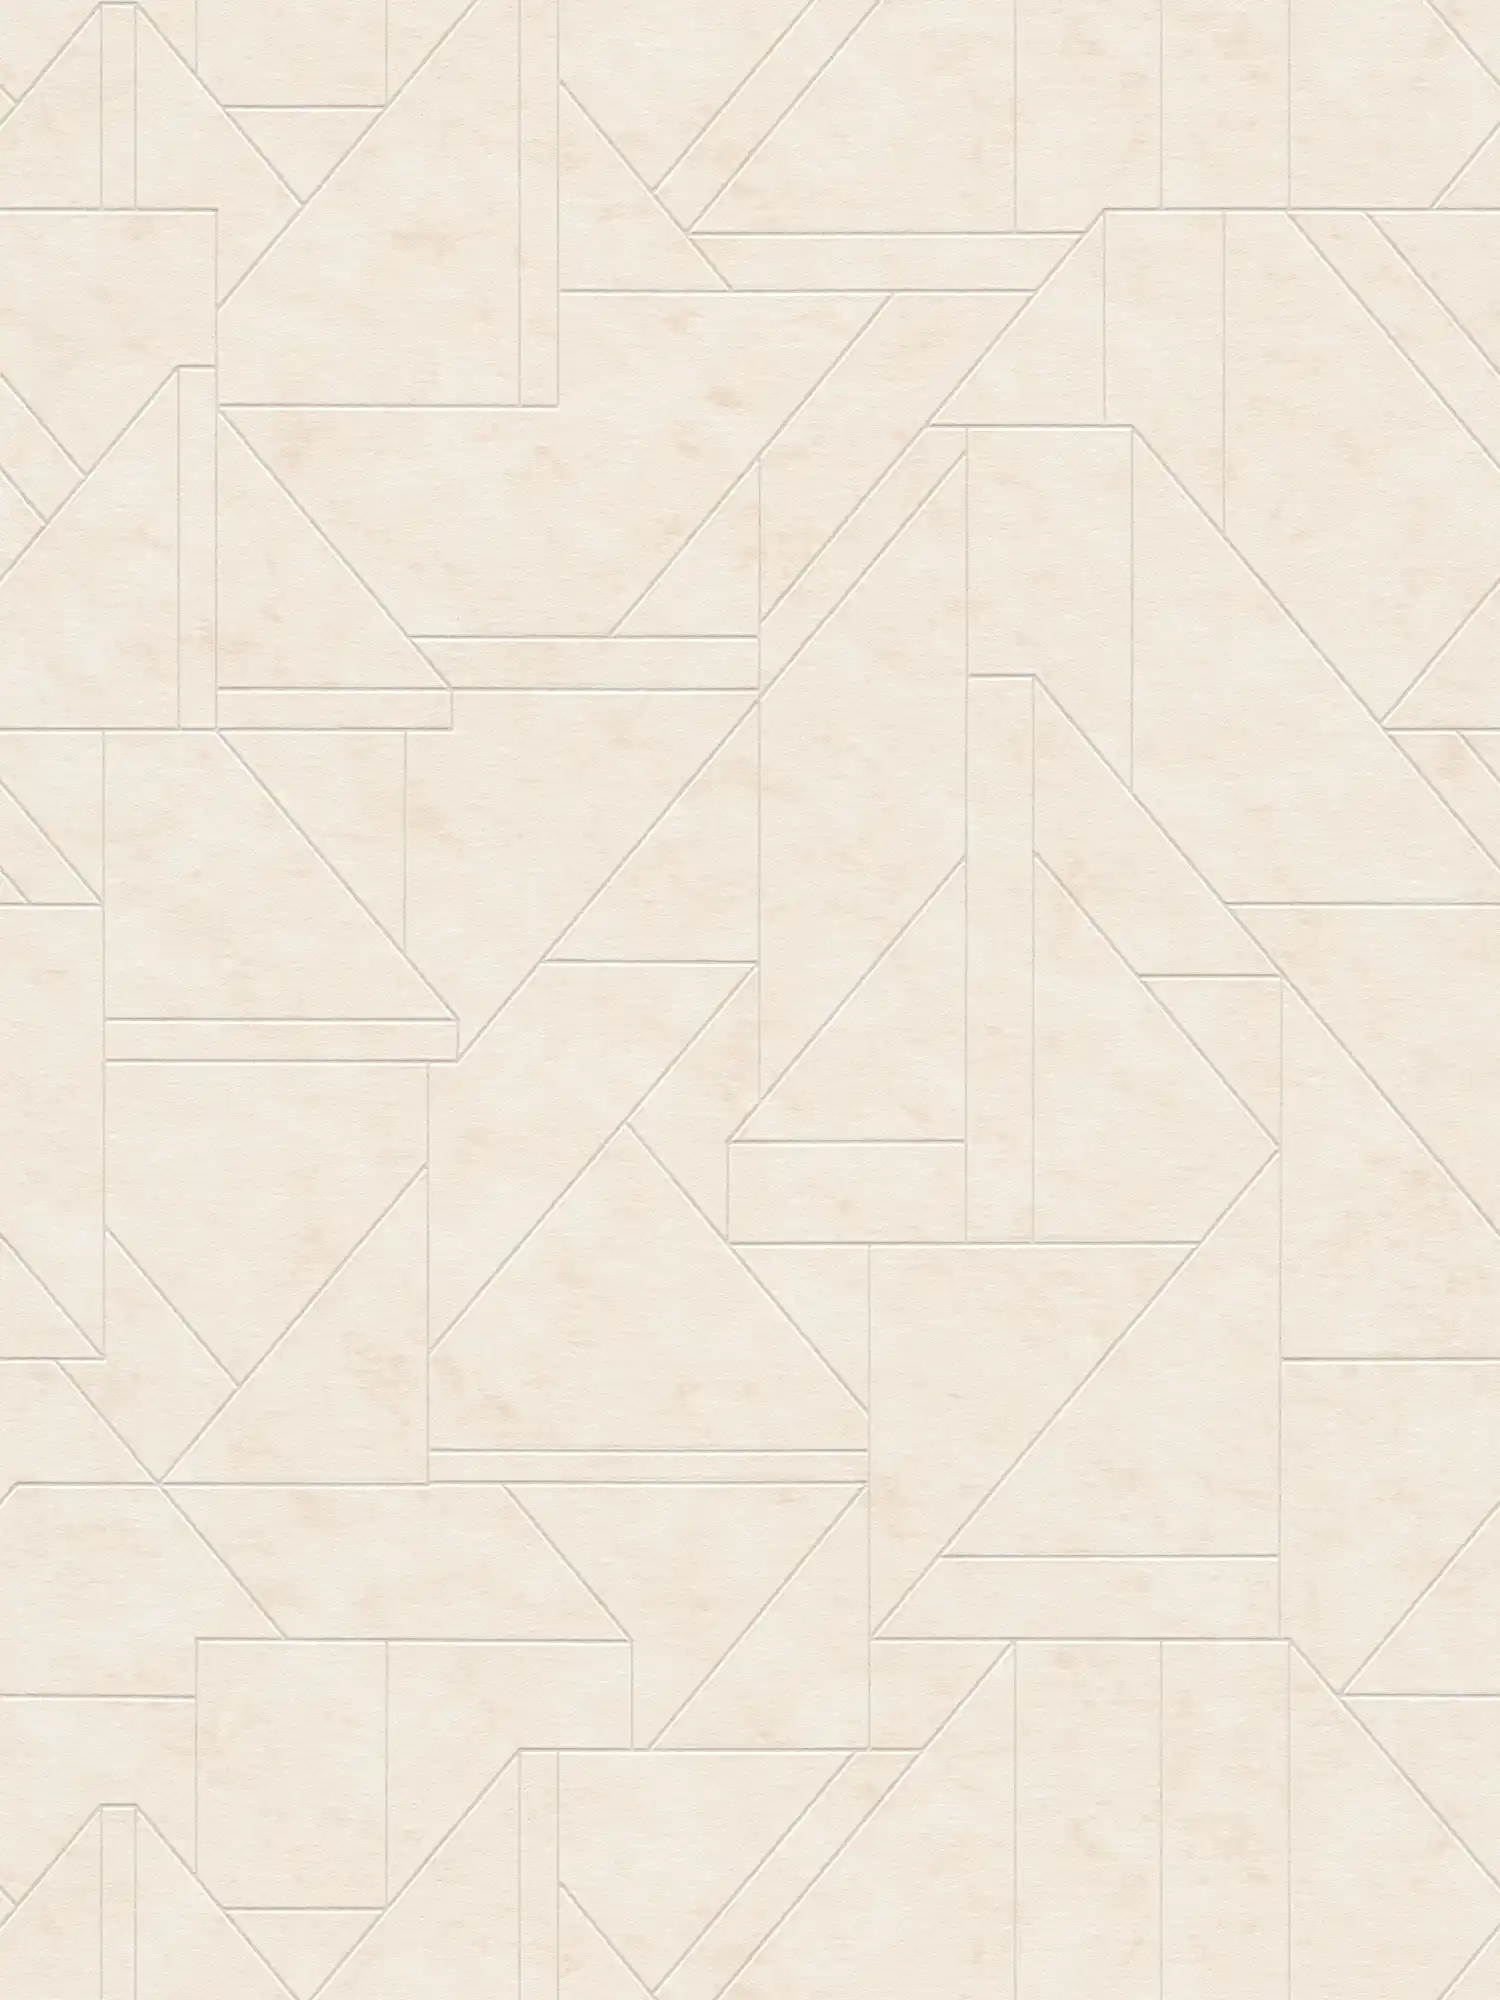             Non-woven wallpaper with graphic line pattern - cream, white, silver
        